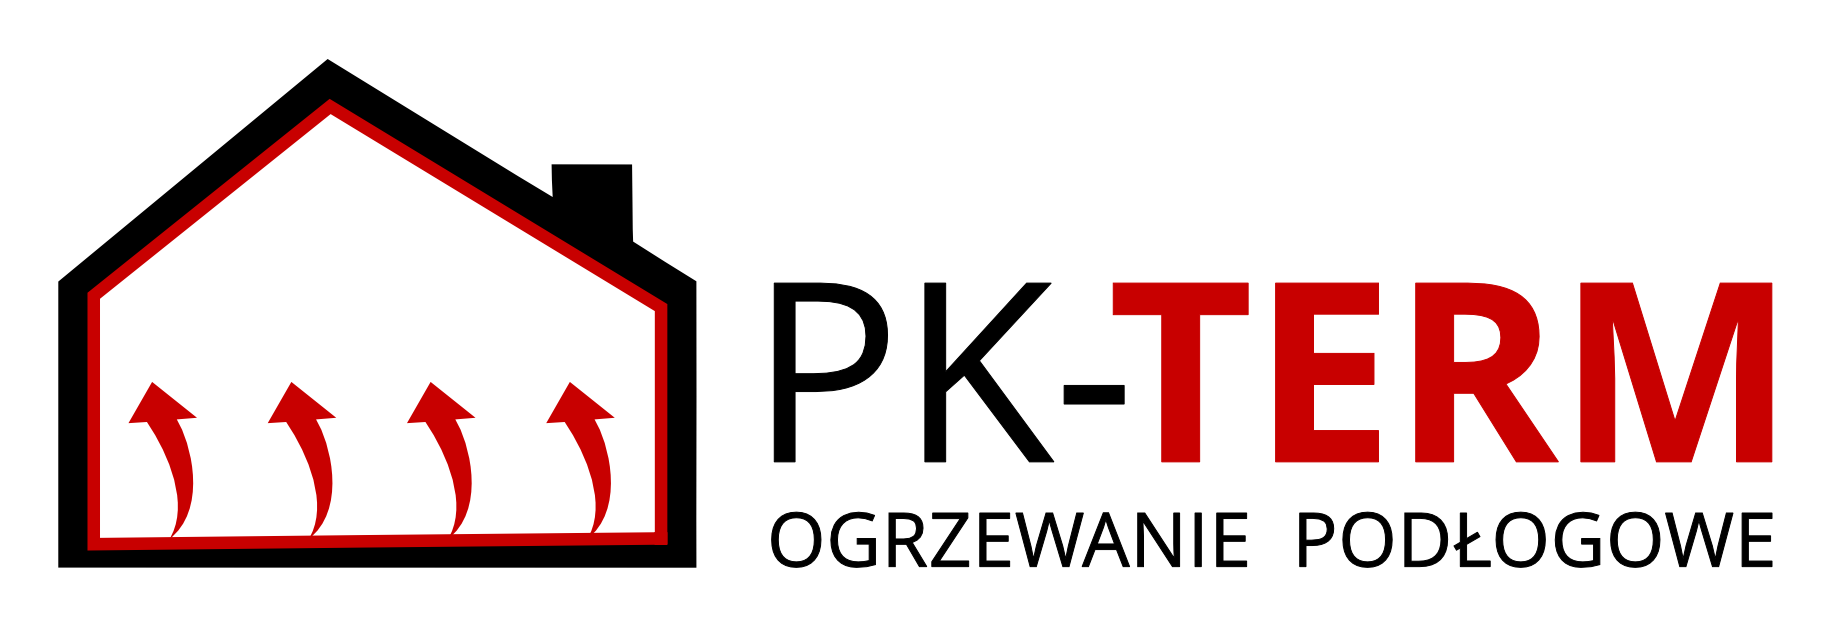 pk-term_logo